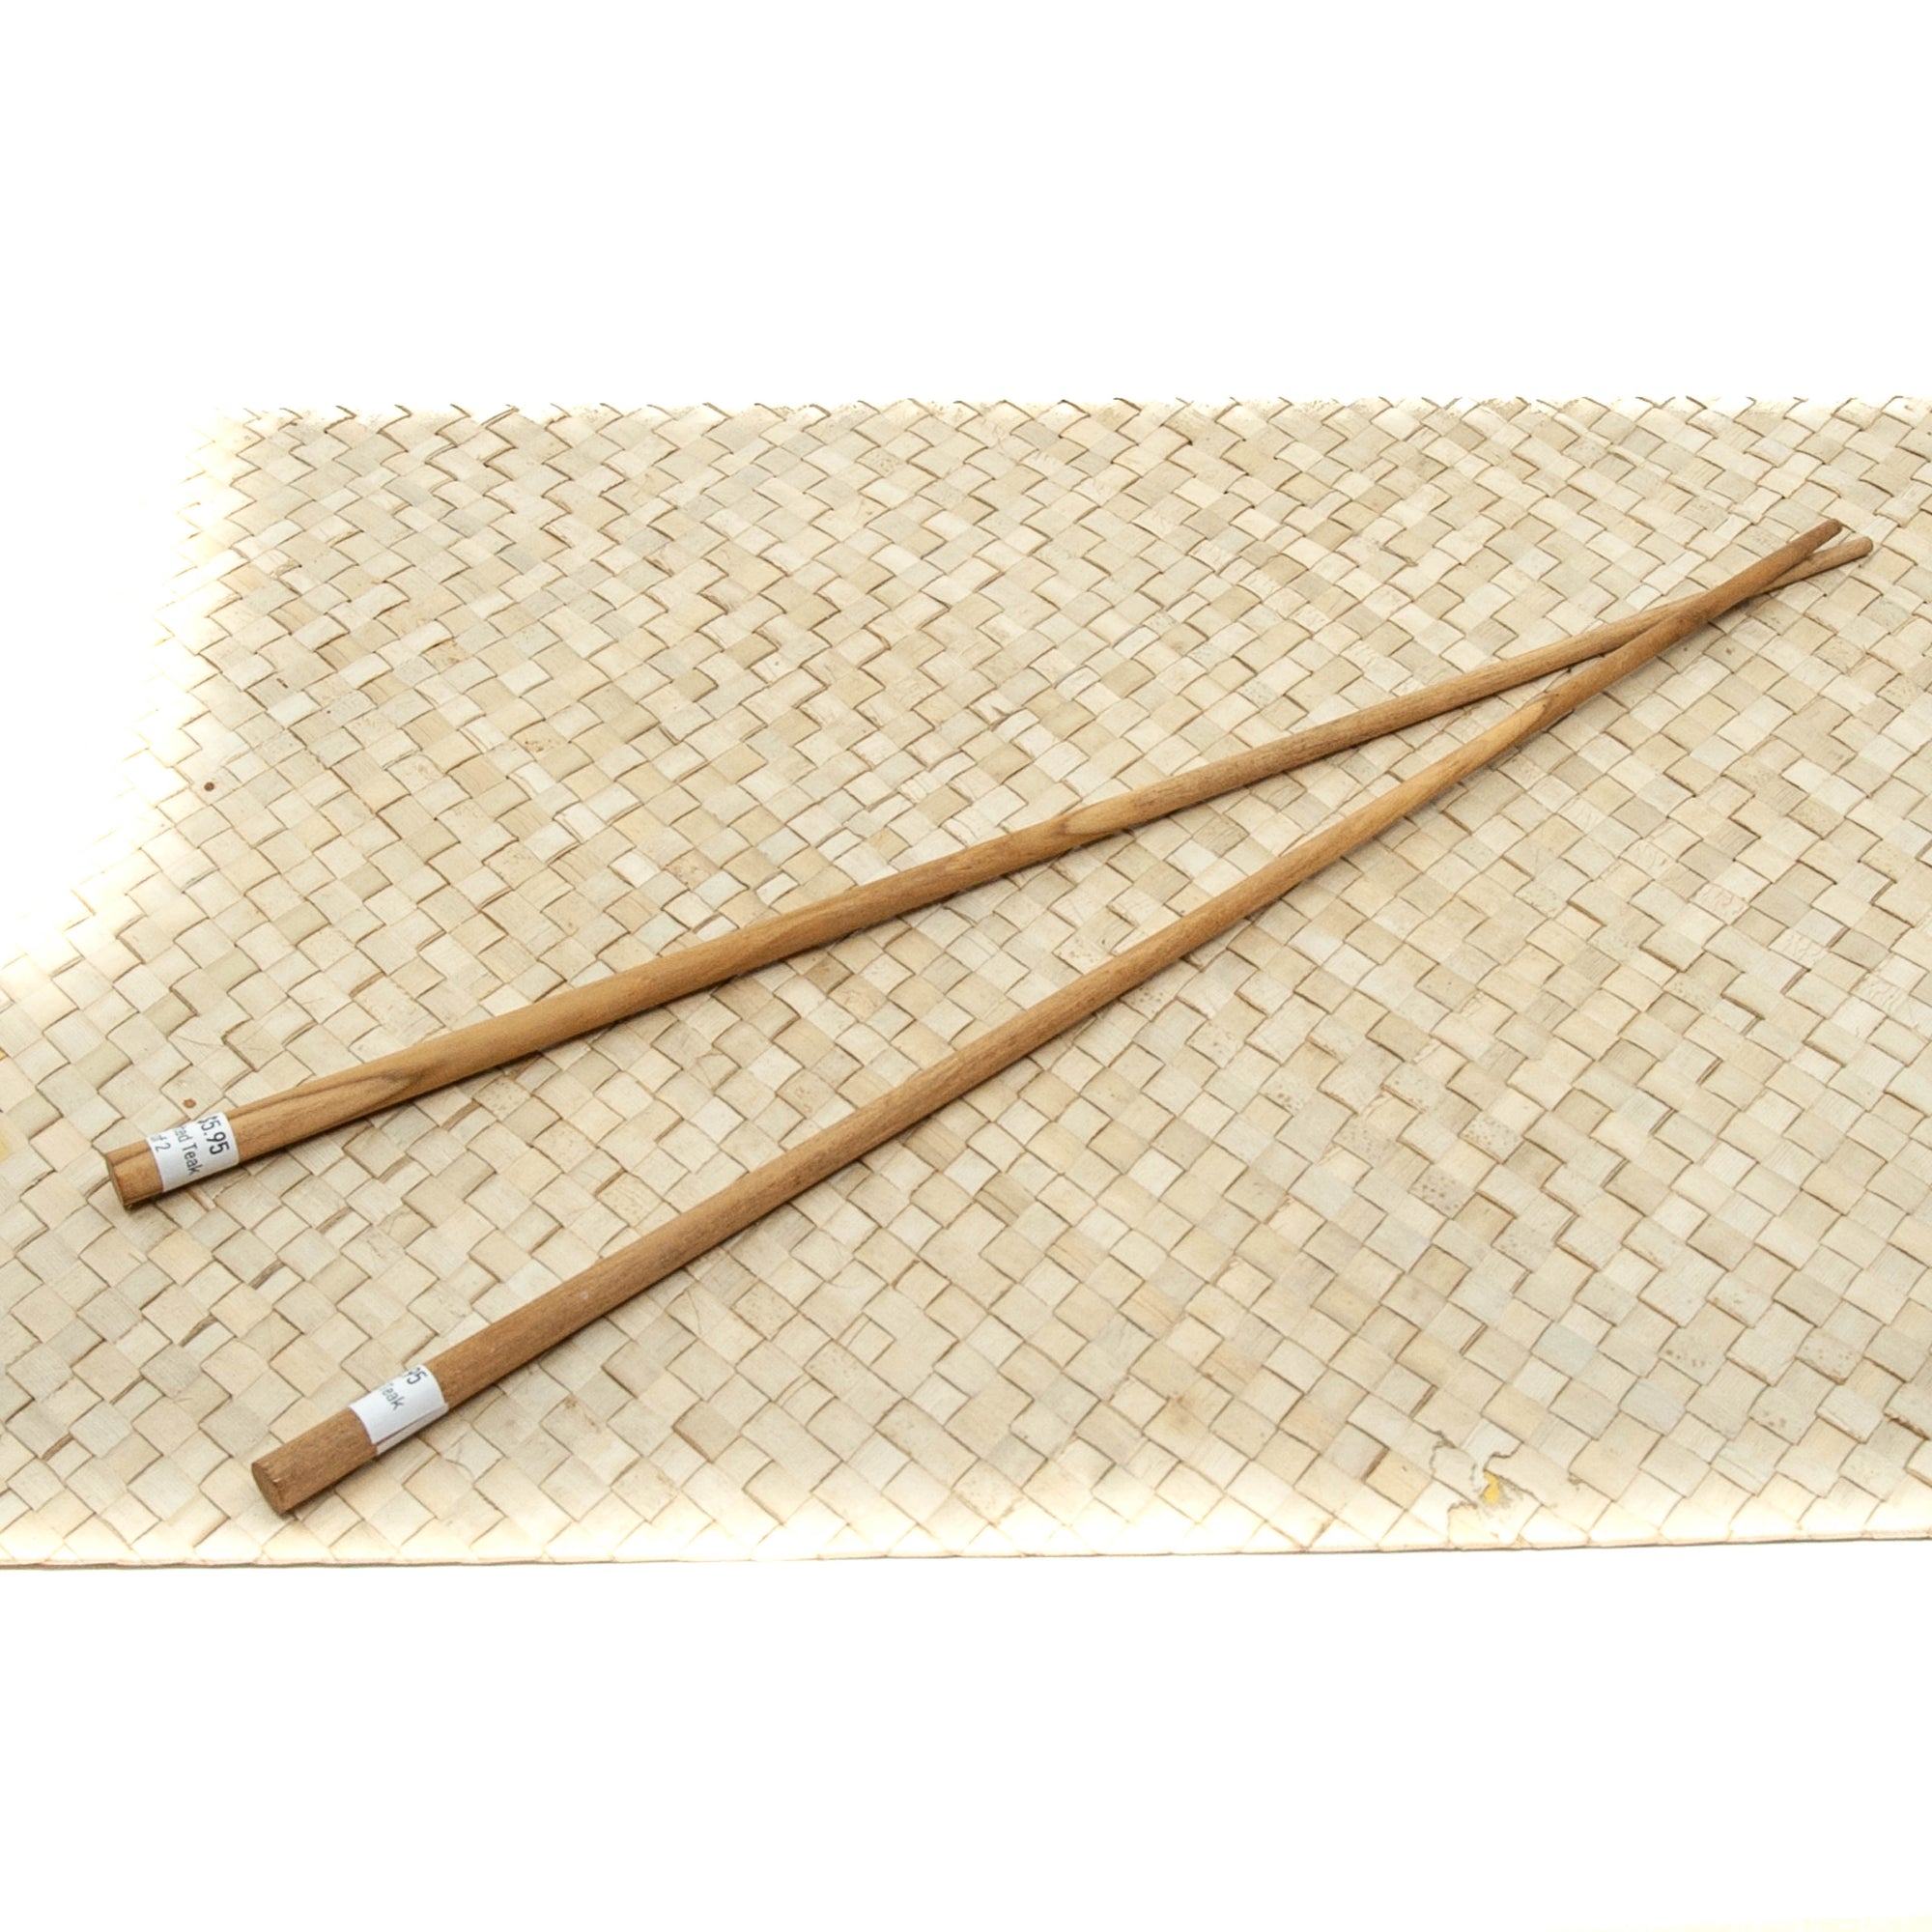 Bali Teak Chopstick Set - Long